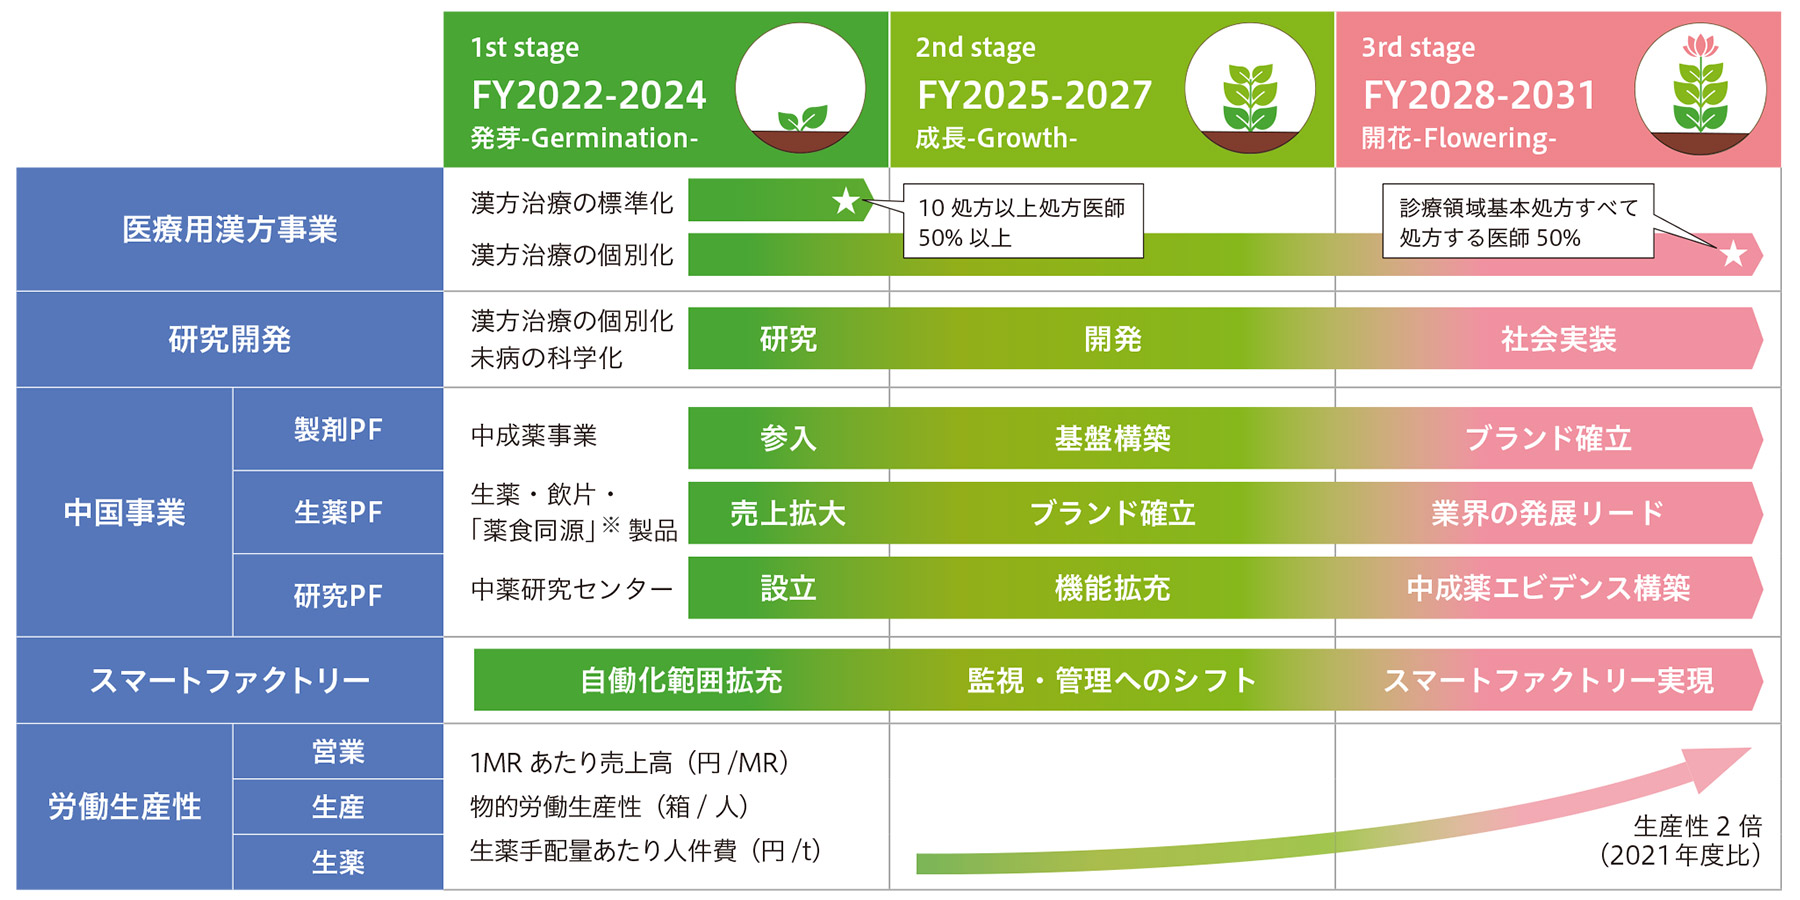 TSUMURA VISION “Cho-WA” 2031実現へのロードマップ